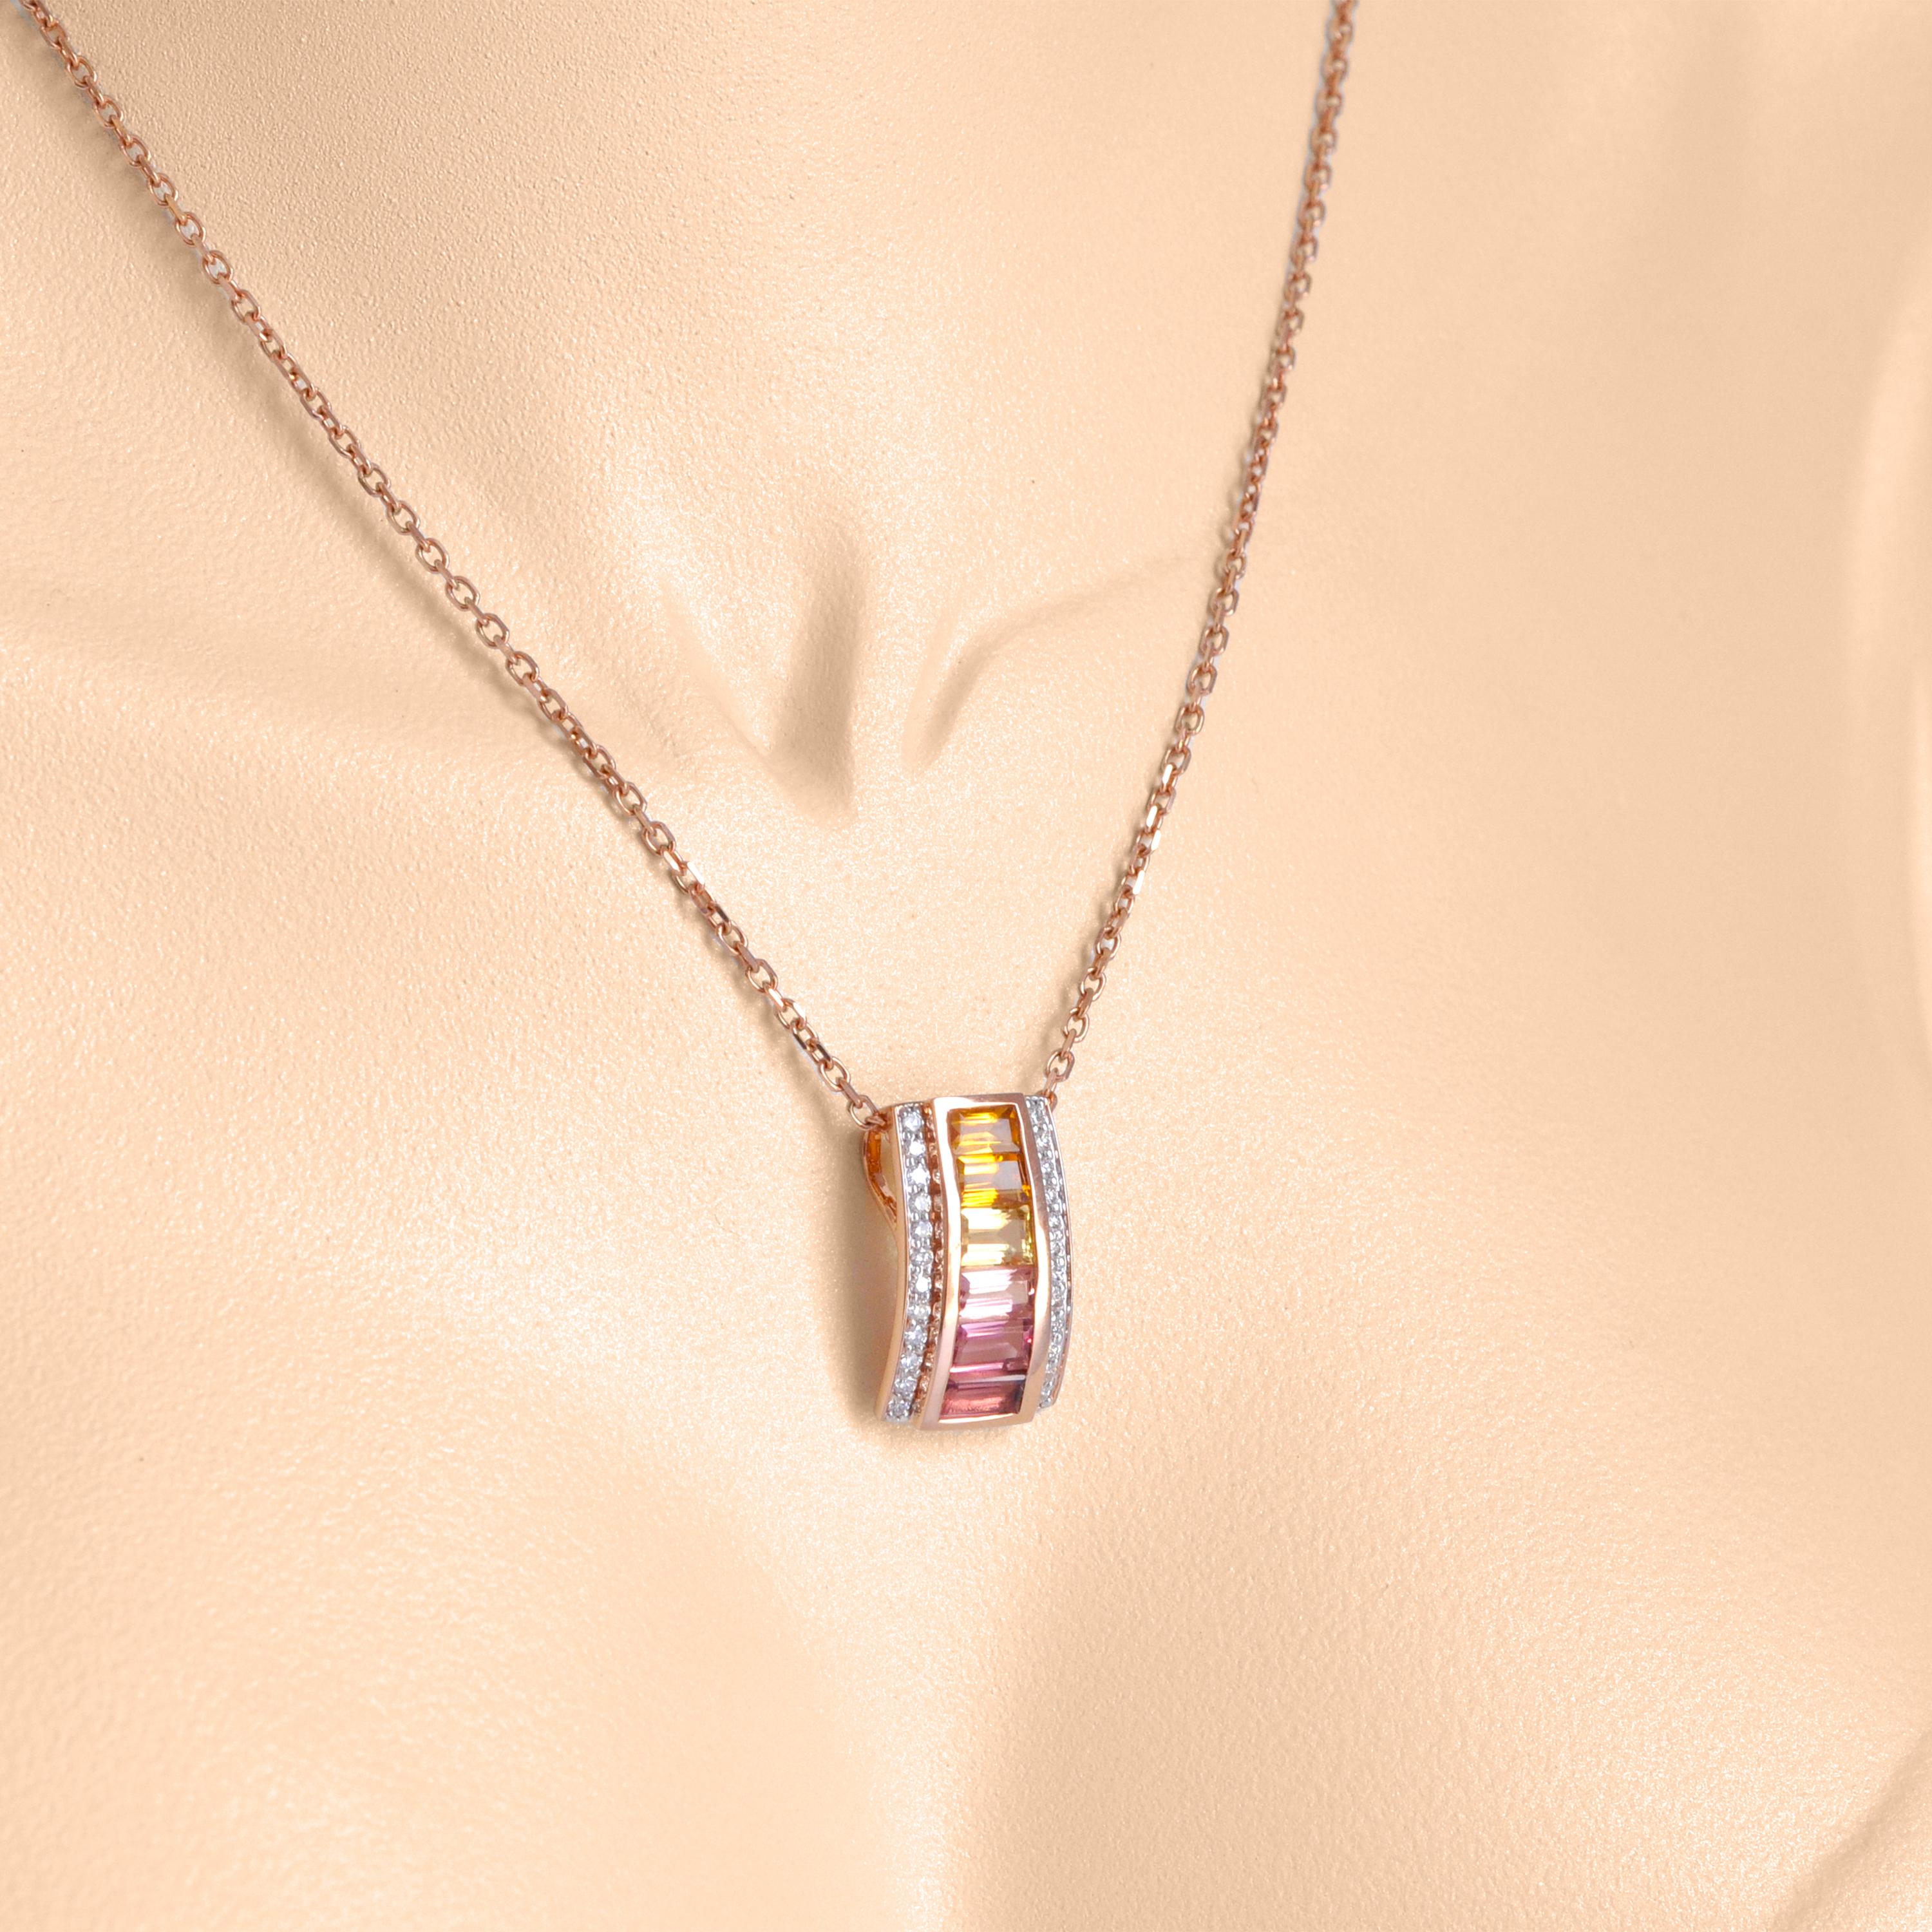 Il s'agit d'une exquise parure en or 18 carats citrine rose tourmaline pyramide diamant, une fusion captivante d'élégance et de brillance. Conçue dans un souci de précision et de luxe, cette parure est composée de pierres précieuses vibrantes, la